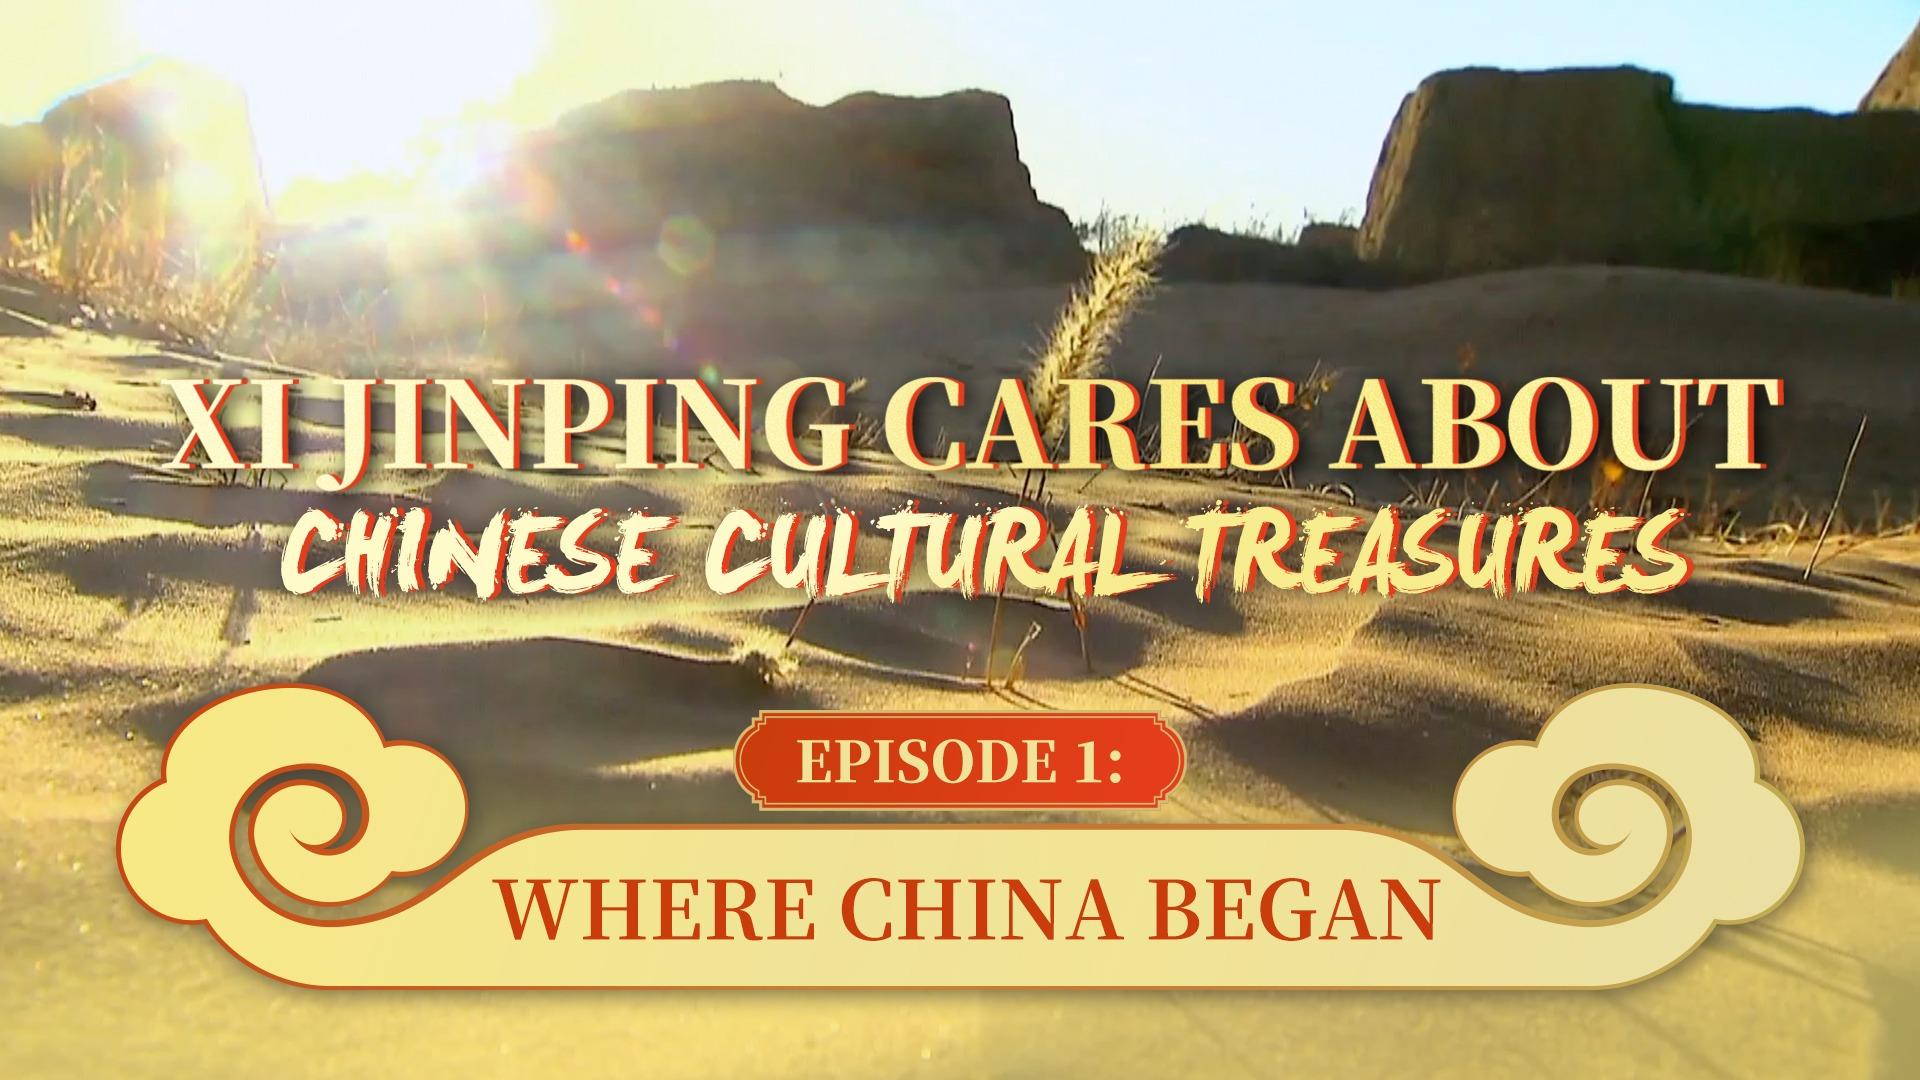 گنجینه های فرهنگی چین و رئیس جمهور «شی جین پینگ»| جایی که چین آغاز شدا